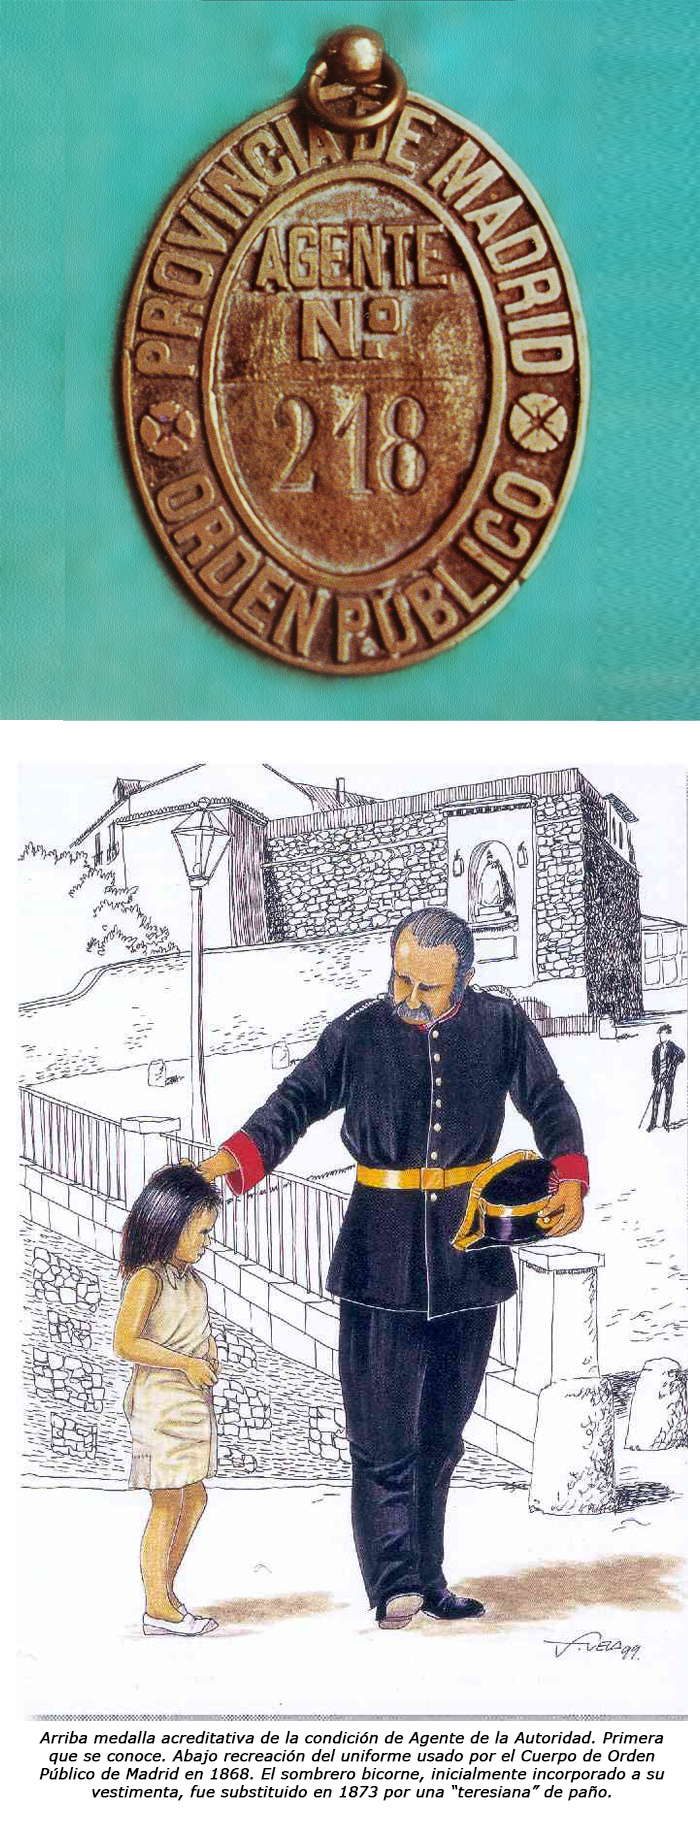 medalla acreditativa de la condición de Agente de la Autoridad. Recreación del uniforme usado por el Cuerpo de Orden Público de Madrid en 1868.